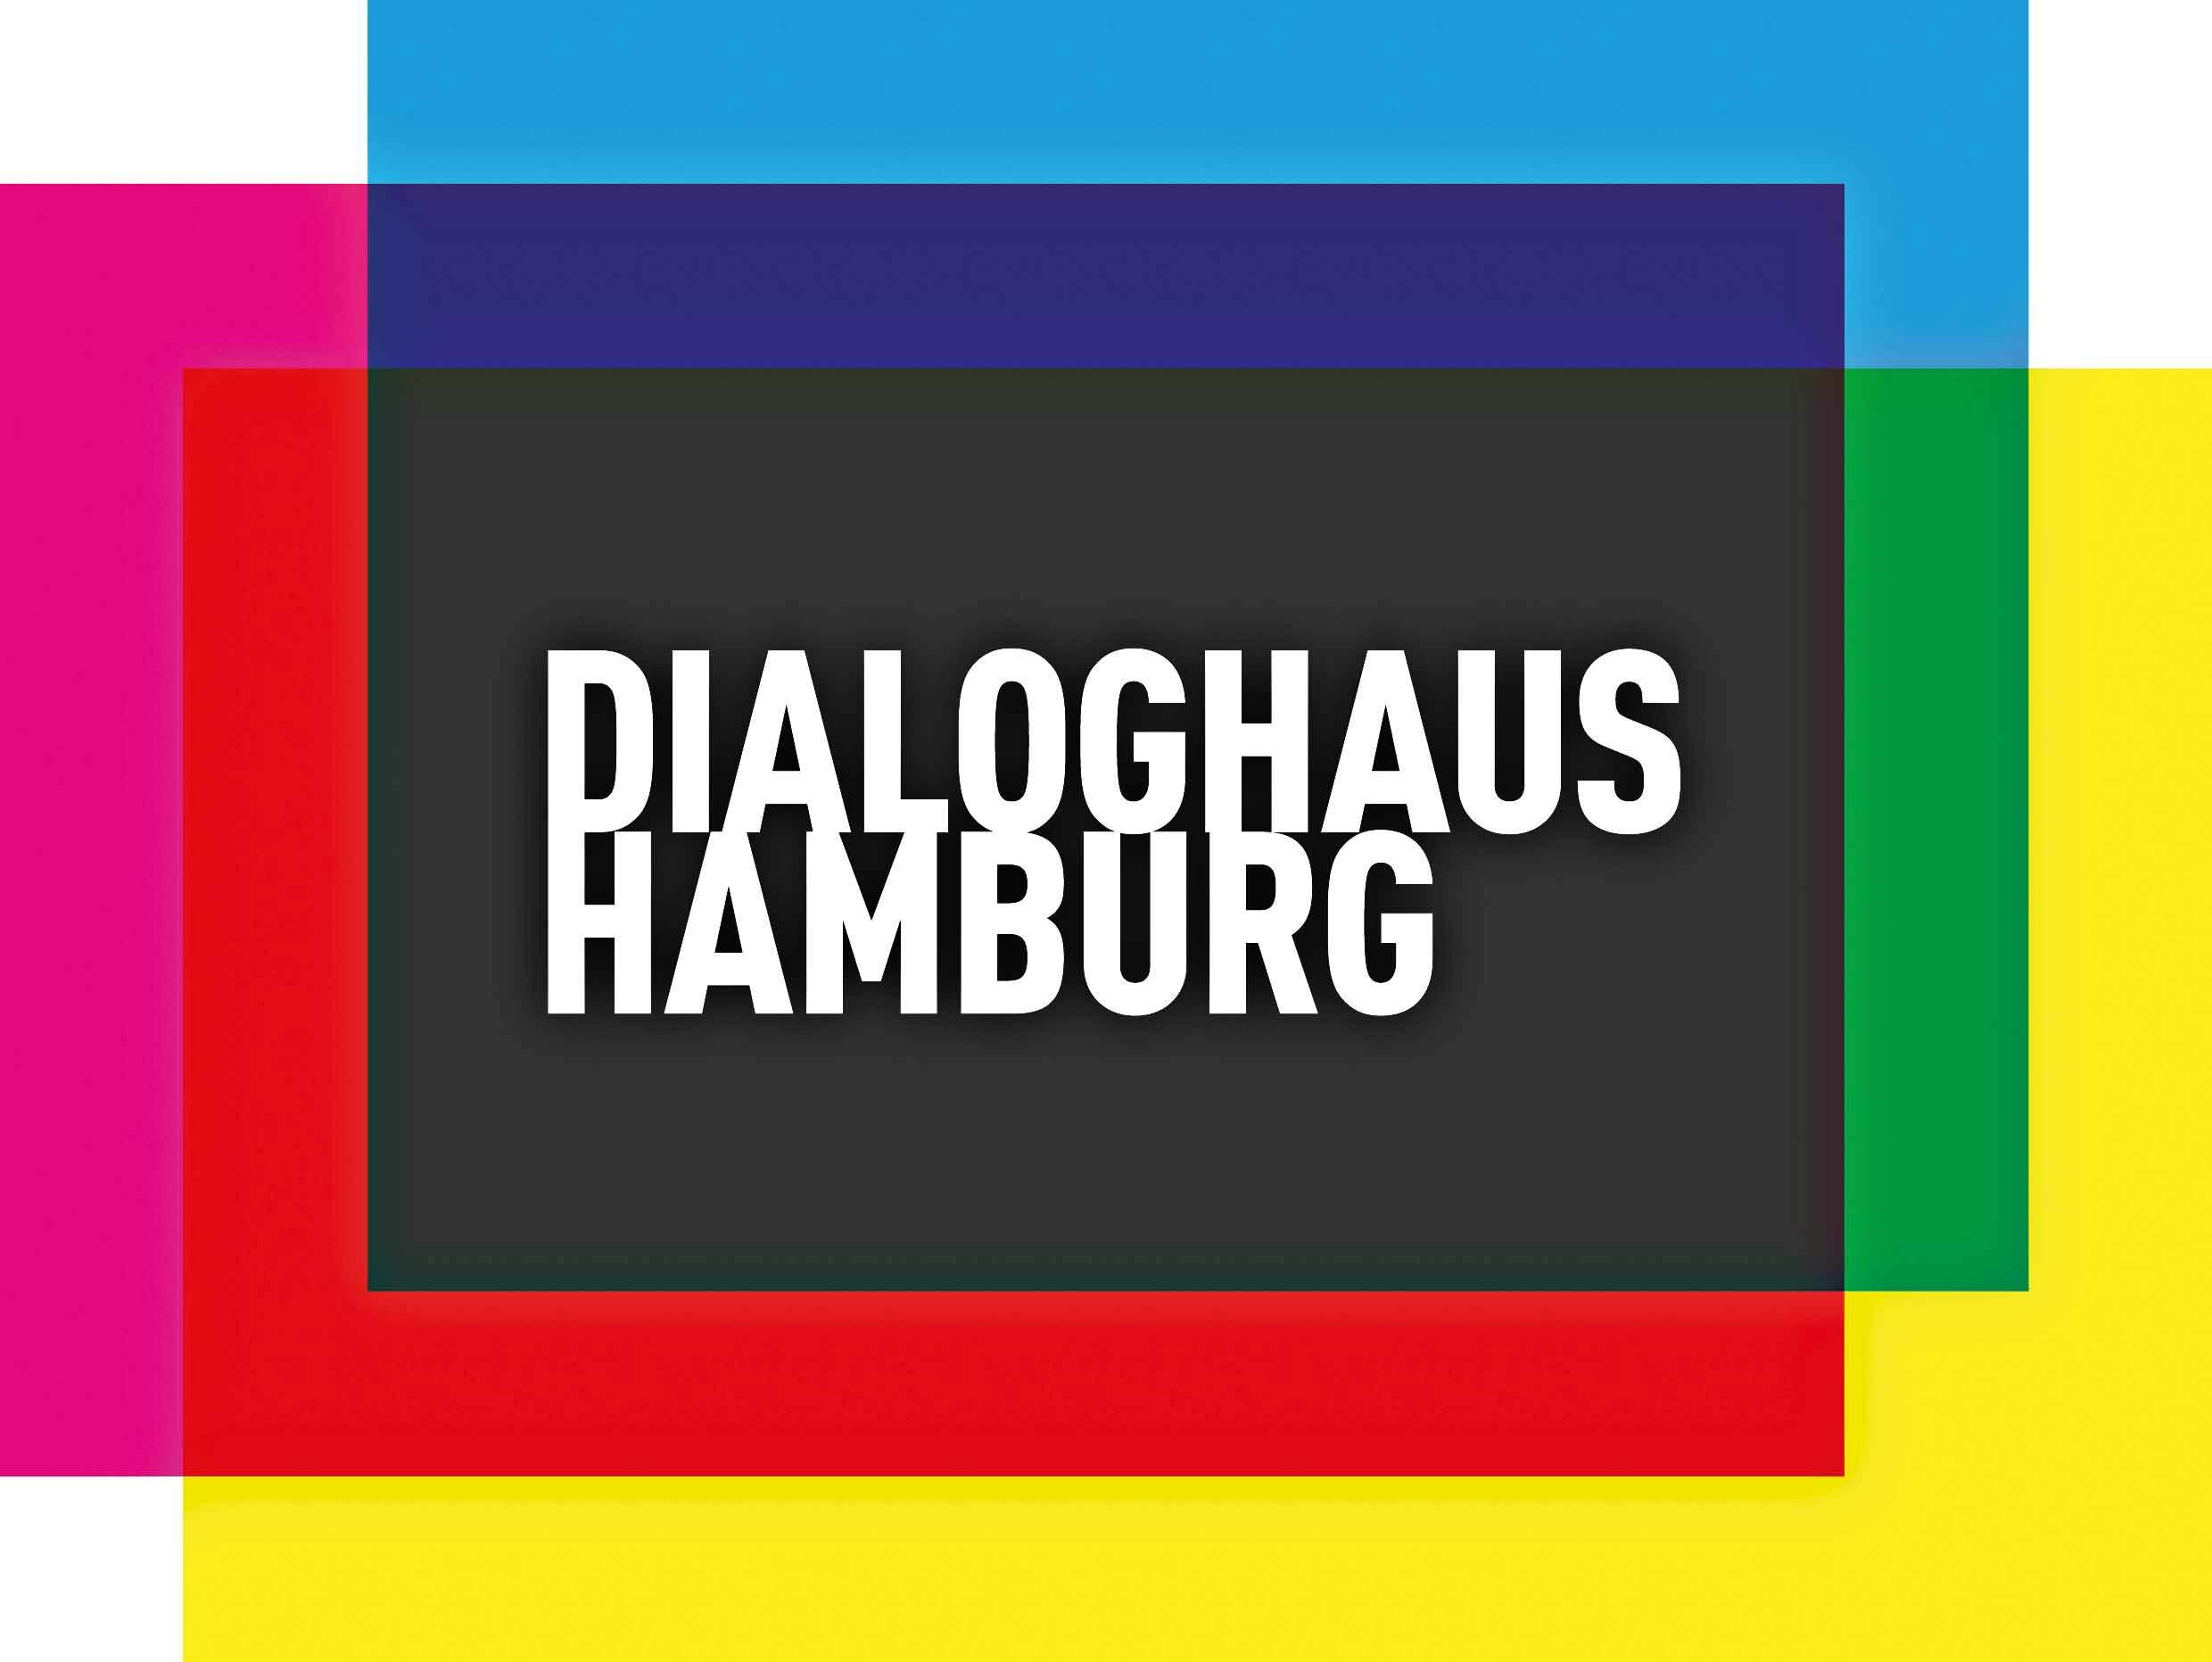 Dialoghaus Hamburg logo